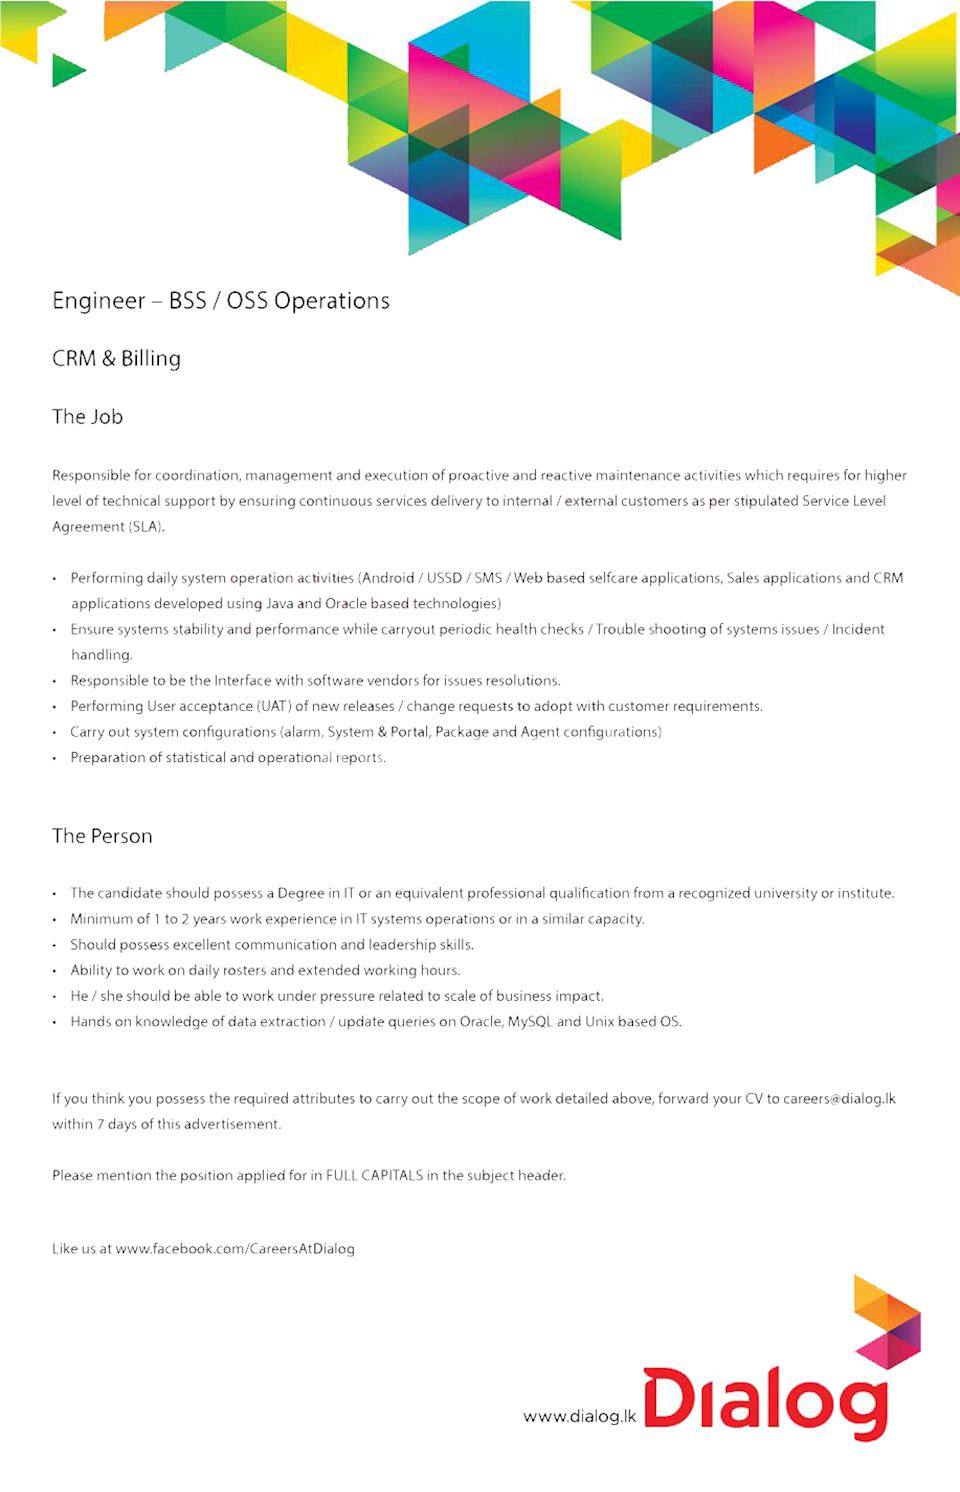 Engineer - BSS / OSS Operations 